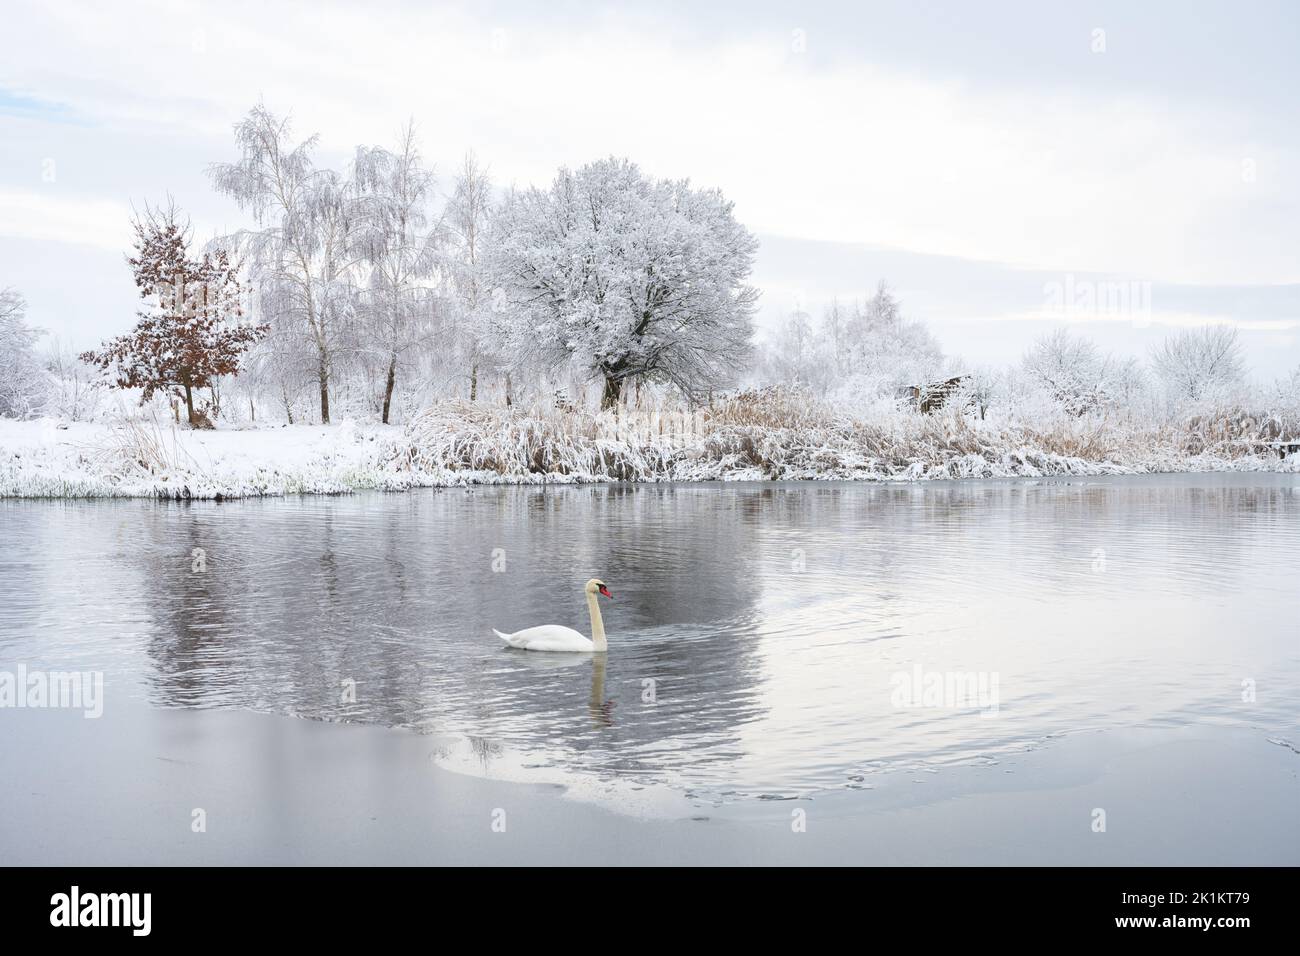 Solo il cigno bianco nuota nell'acqua del lago d'inverno in tempo di alba. Frosty alberi nevosi sullo sfondo. Fotografia animale Foto Stock